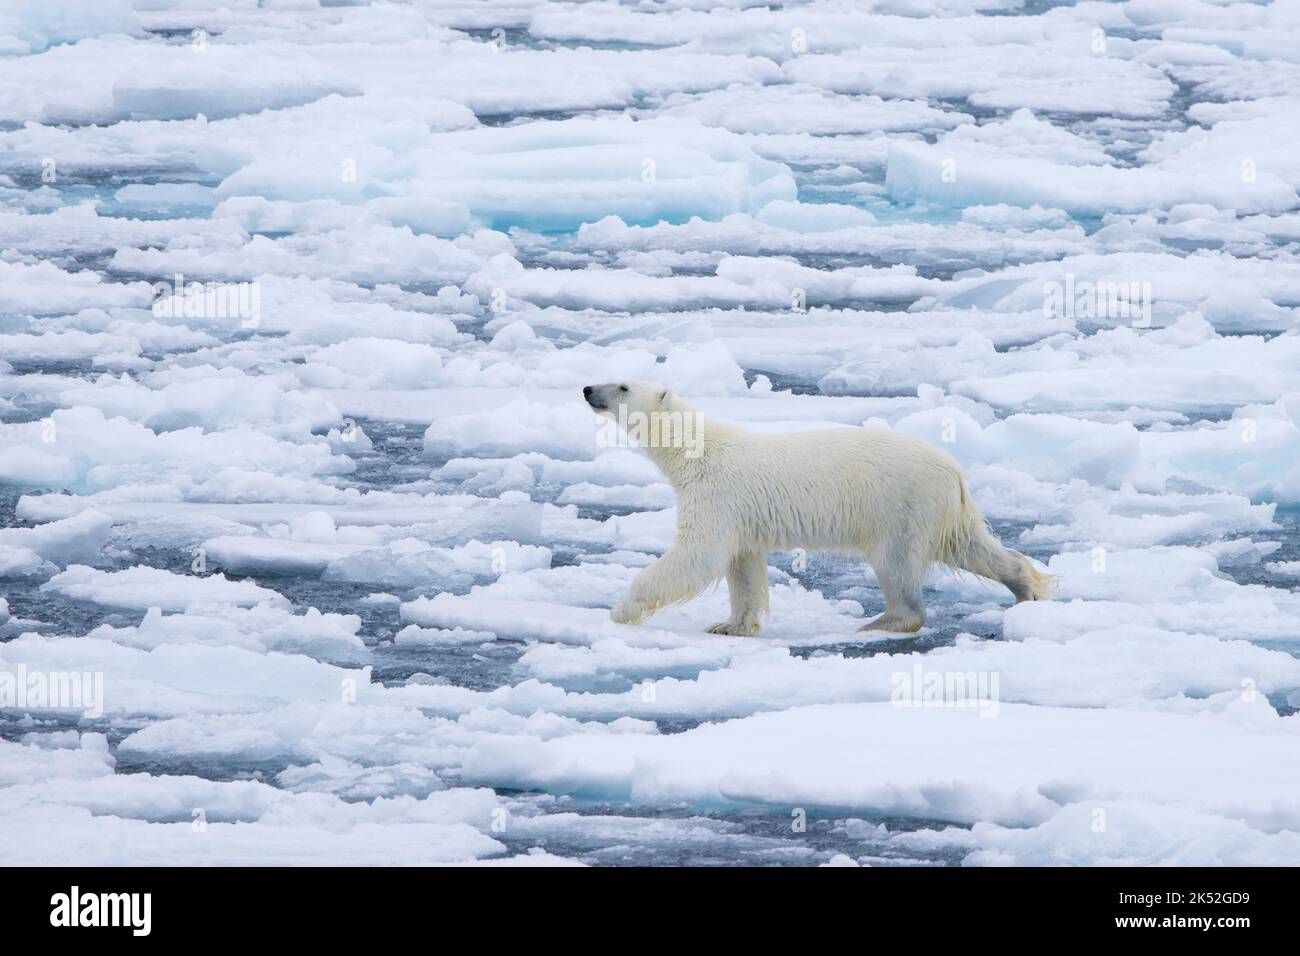 Orso polare solitario (Ursus maritimus) che percorre la deriva di ghiaccio / galleggianti di ghiaccio nell'Oceano Artico lungo la costa di Svalbard, Spitsbergen, Norvegia Foto Stock